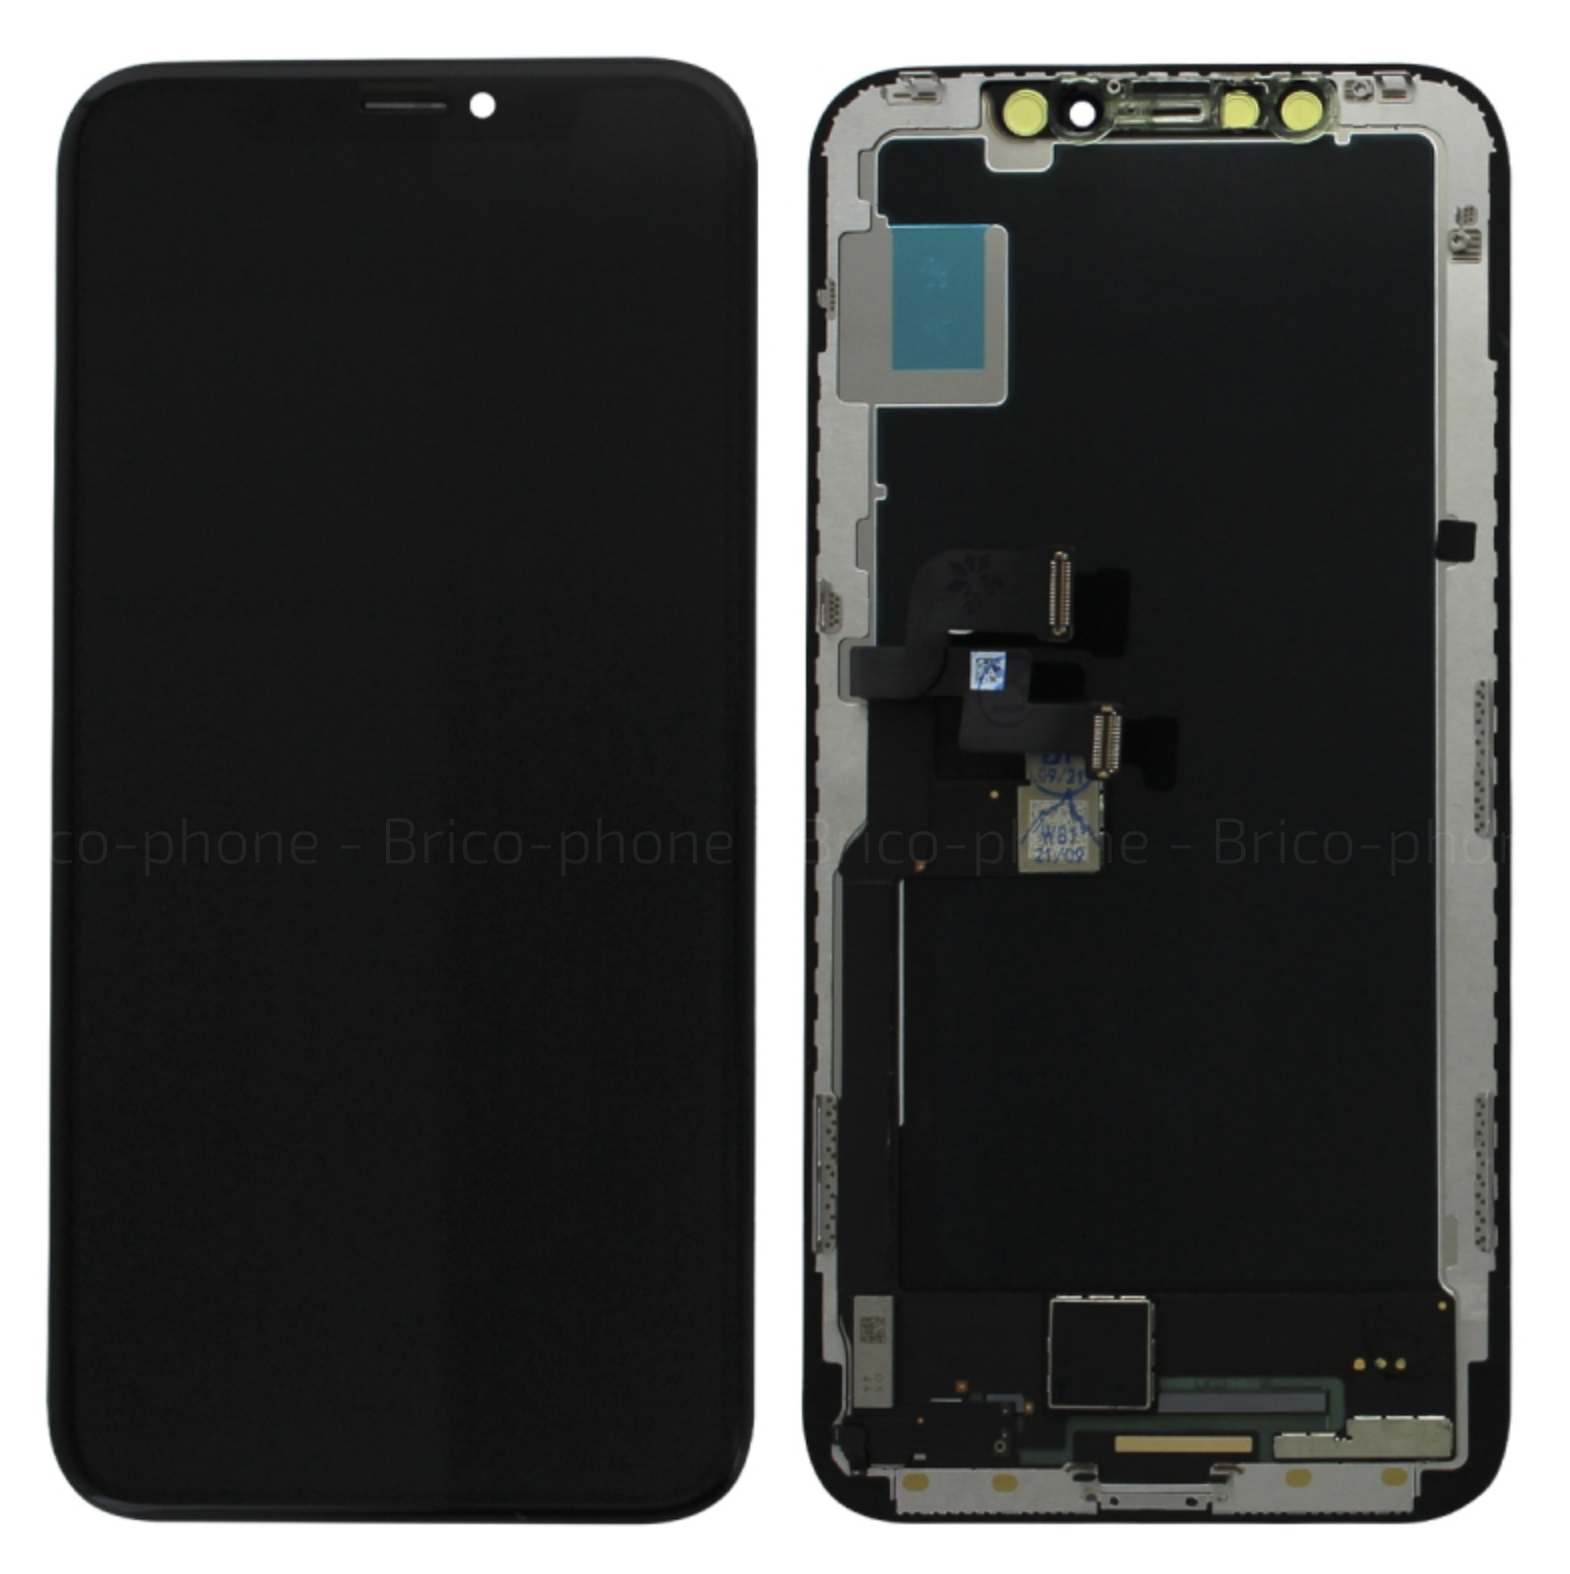 Rachat écran cassé iPhone XS